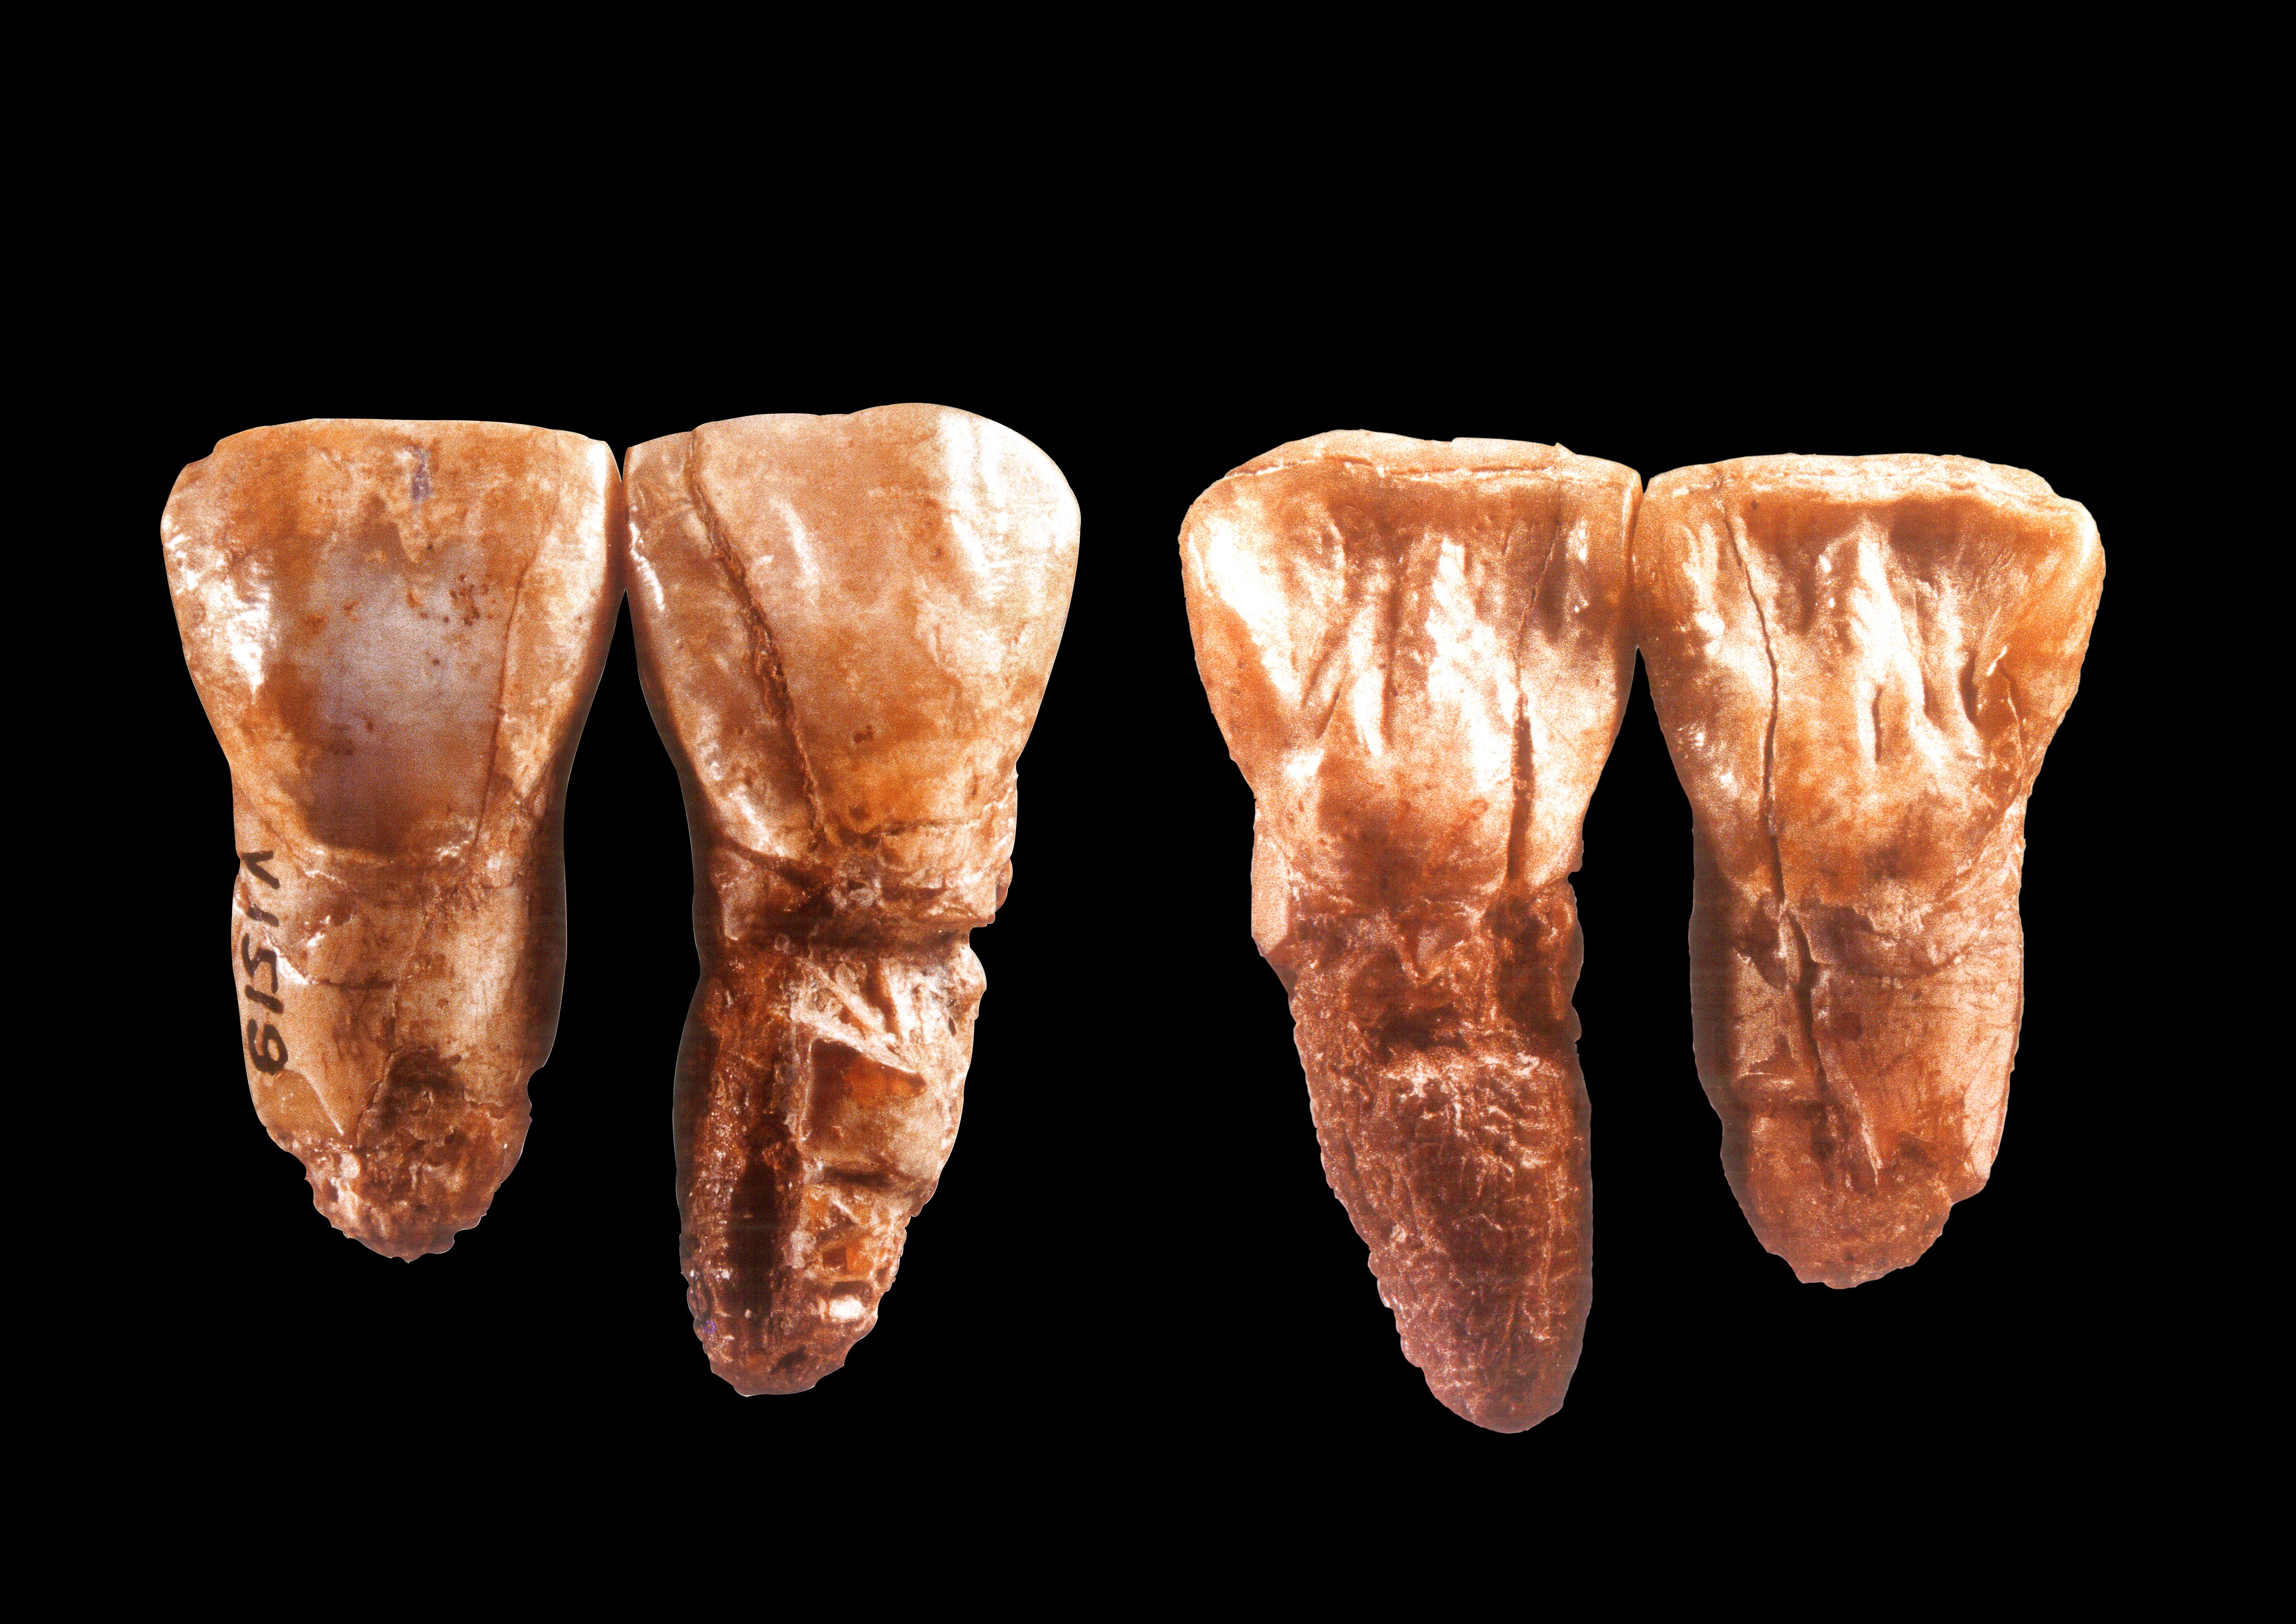 瑞典乌布萨拉大学古生物博物馆共发现4枚周口店北京人牙齿化石 - 神秘的地球 科学|自然|地理|探索